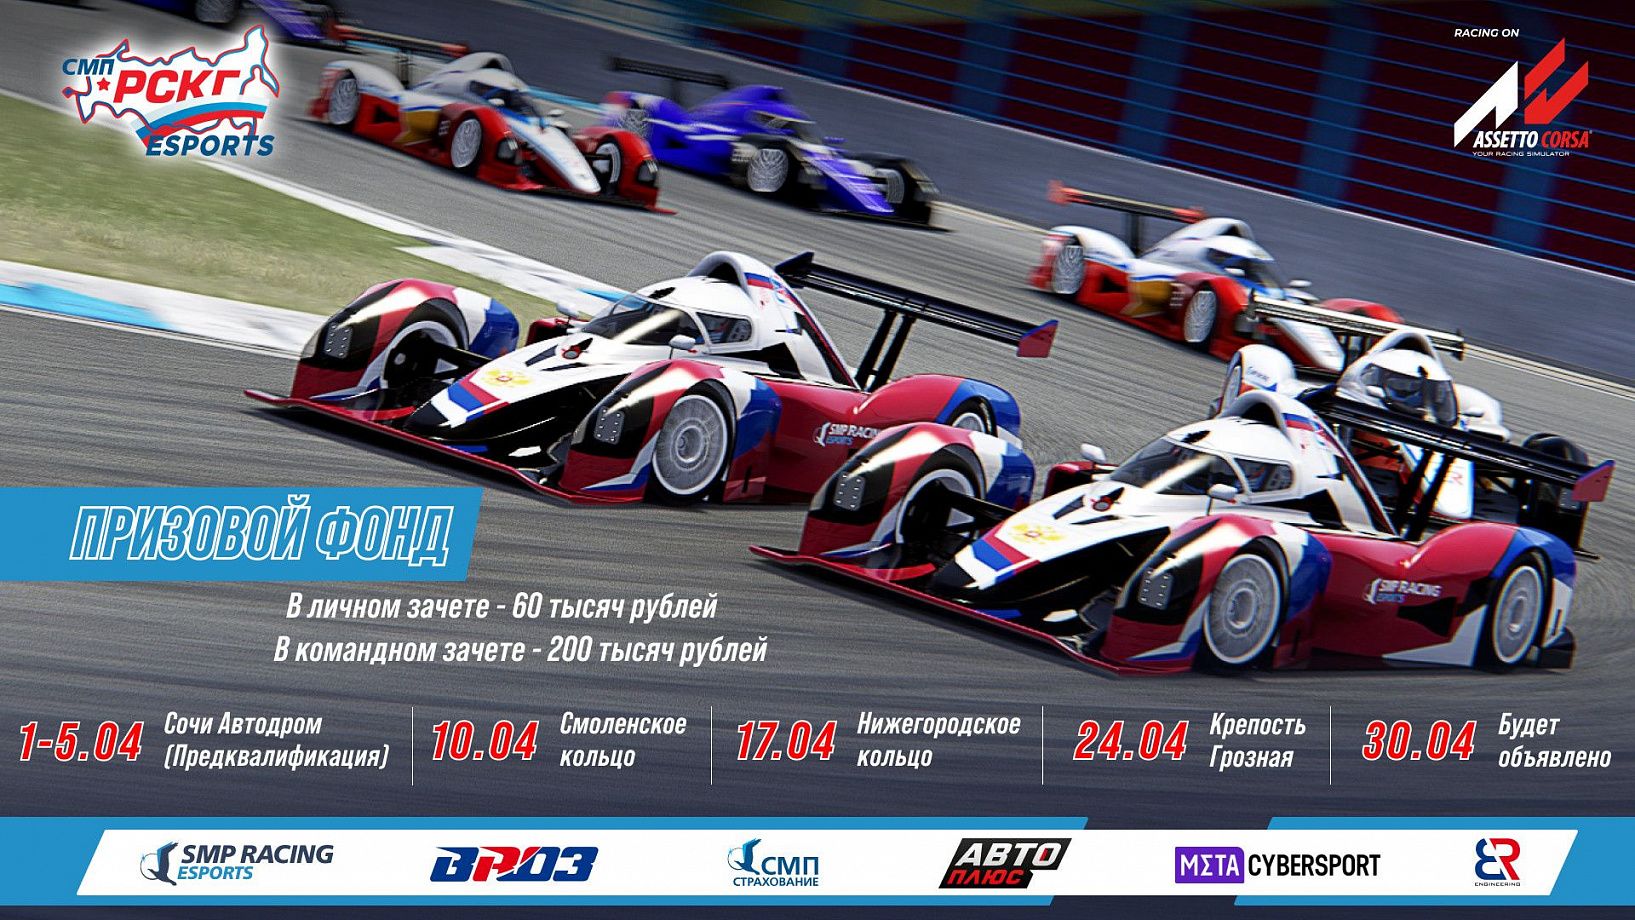 SMP Racing проведёт виртуальный чемпионат еРСКГ на базе симулятора Assetto Corsa